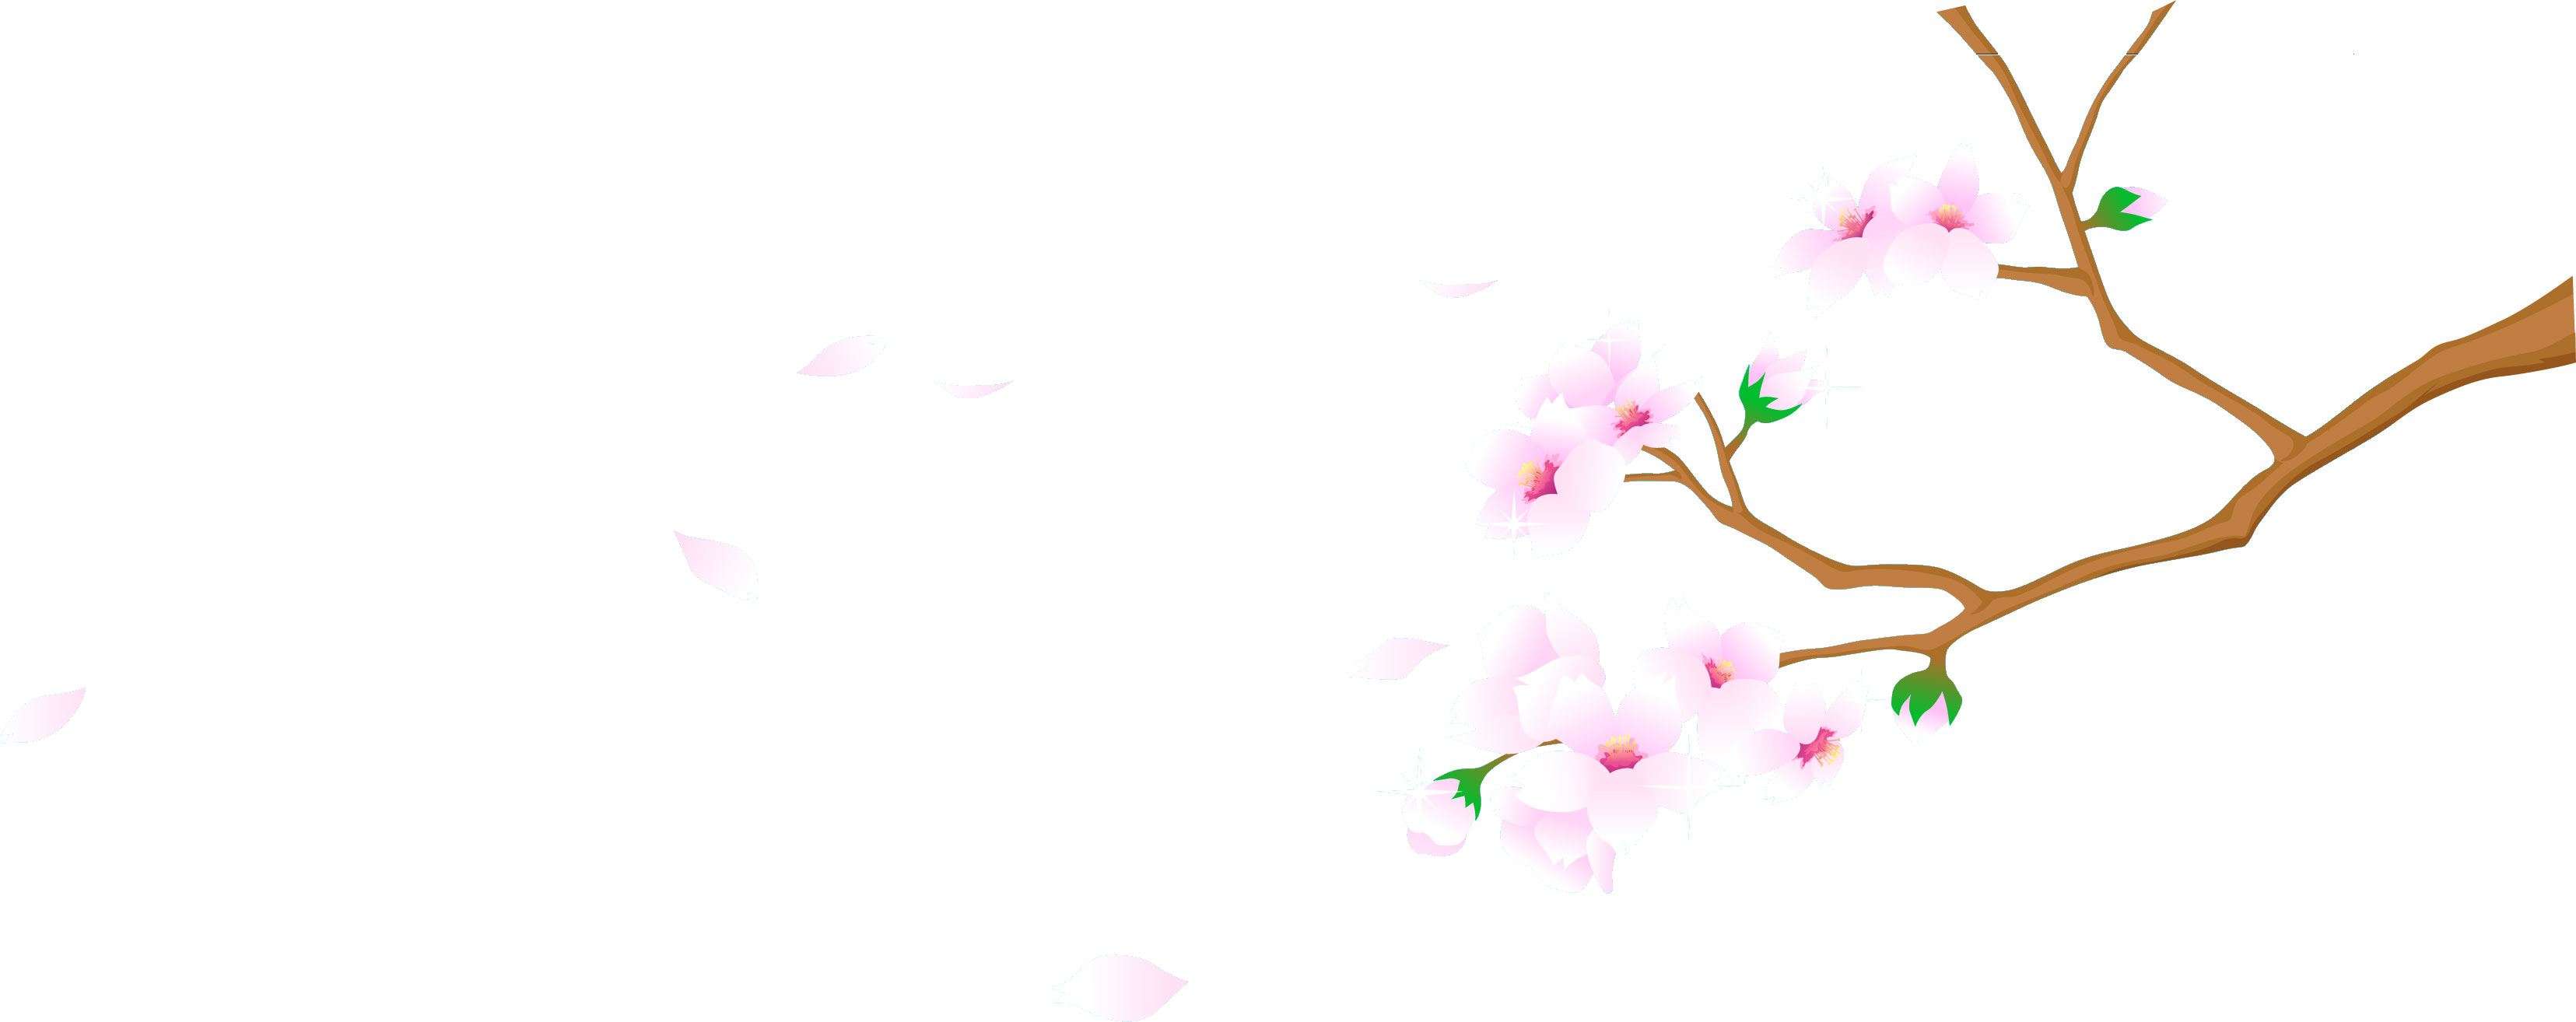 桜 さくら の画像 イラスト フリー素材 No 024 舞い散る桜